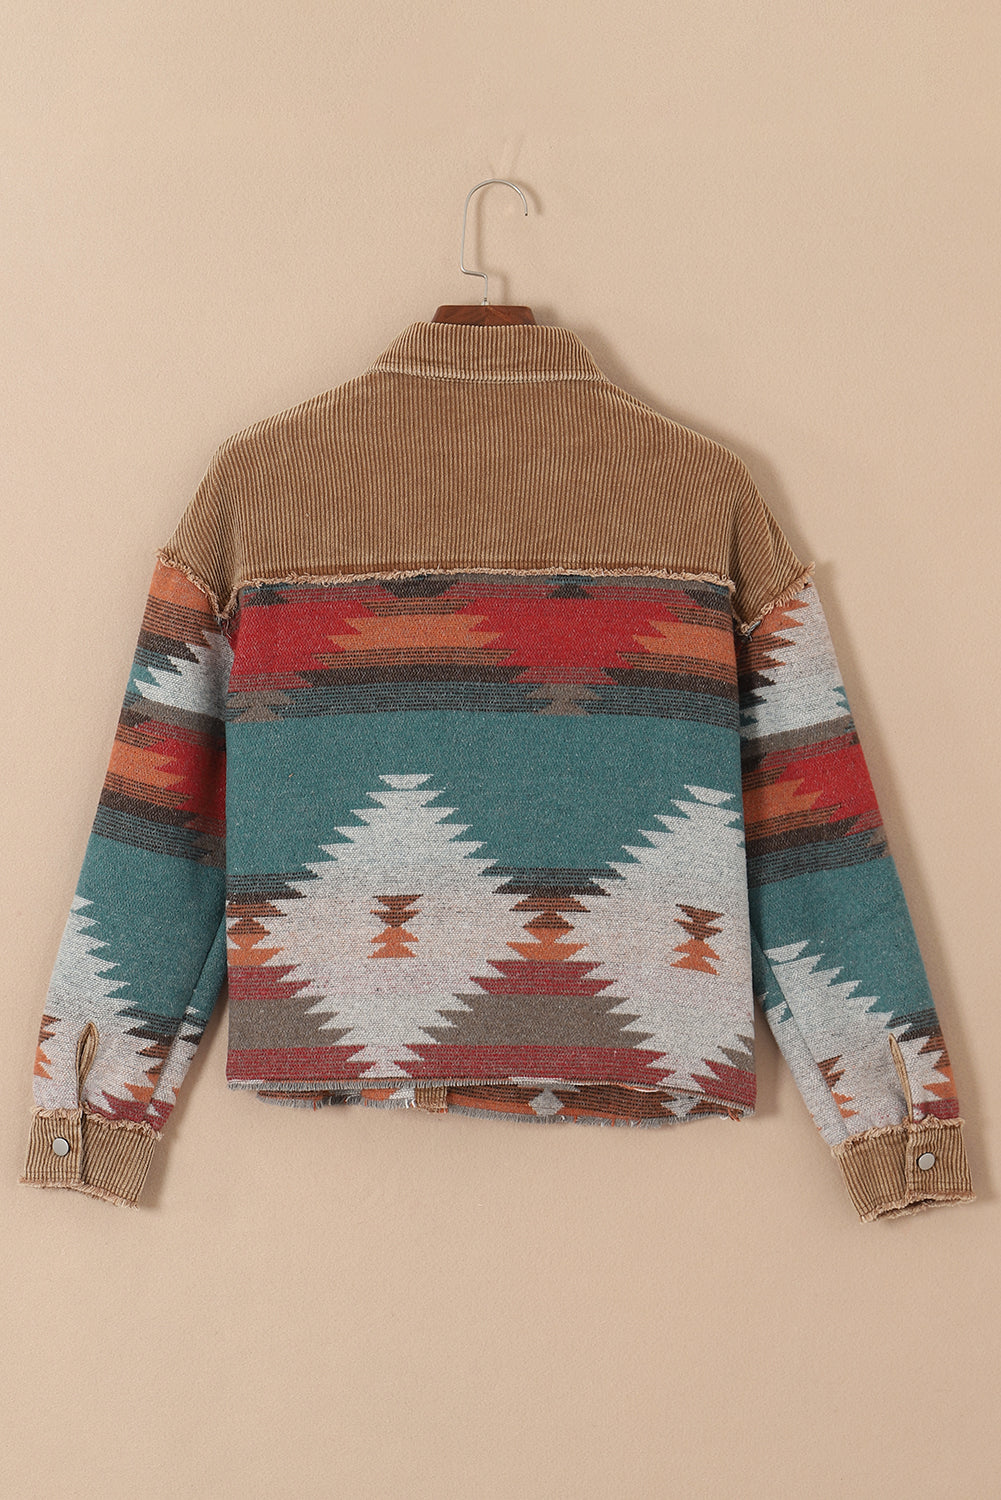 Kamelfarbene Western-Jacke mit Patchwork-Tasche und Patte